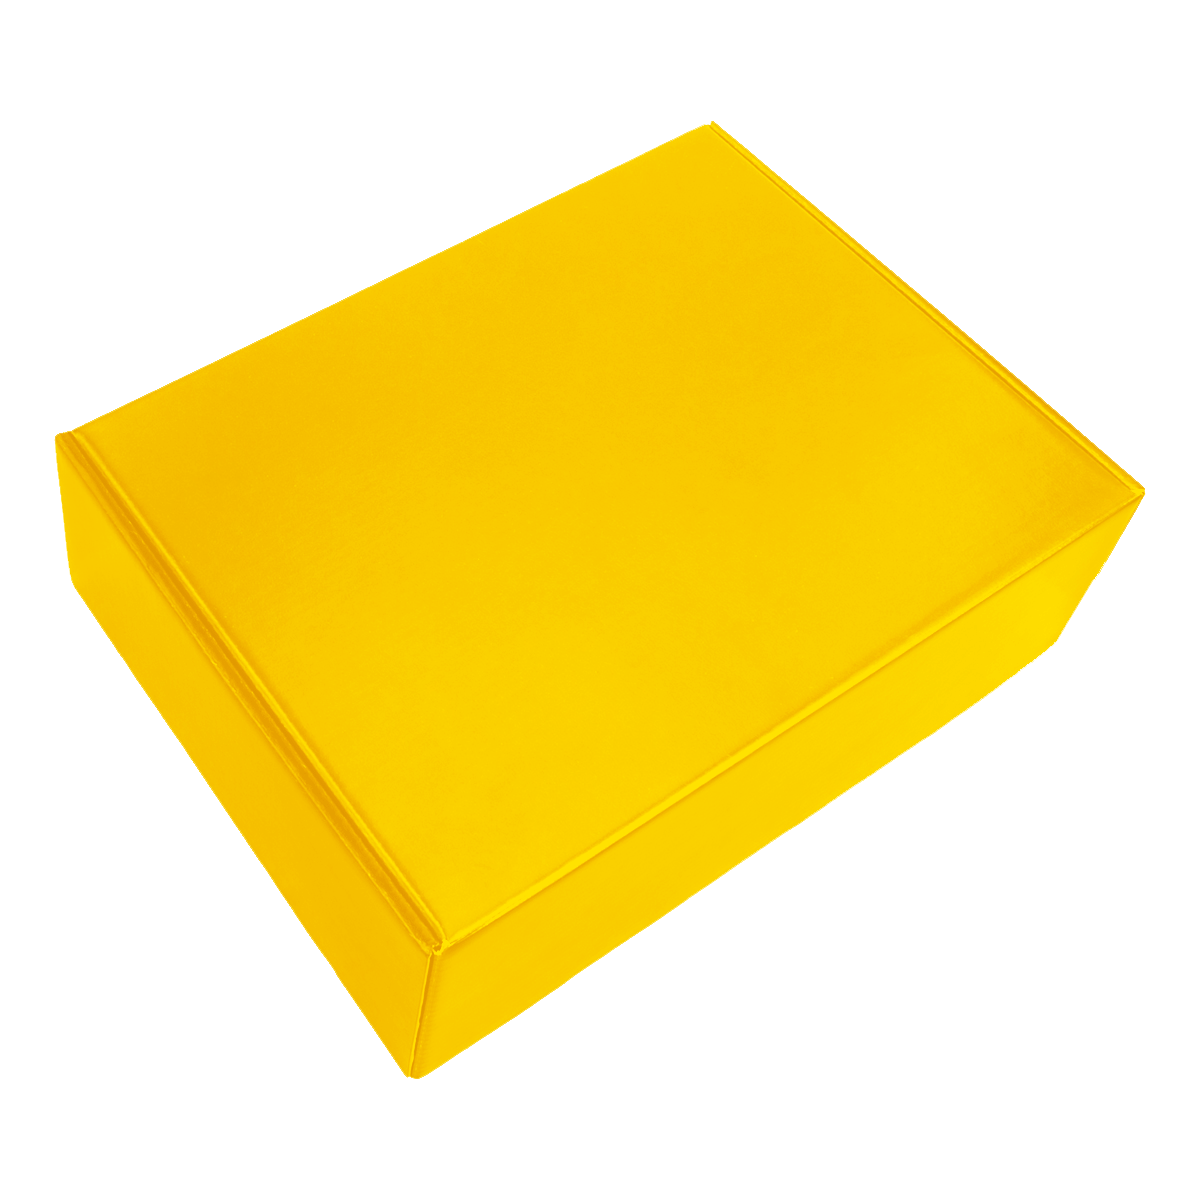 Набор New Box C2 B (желтый), желтый, металл, микрогофрокартон